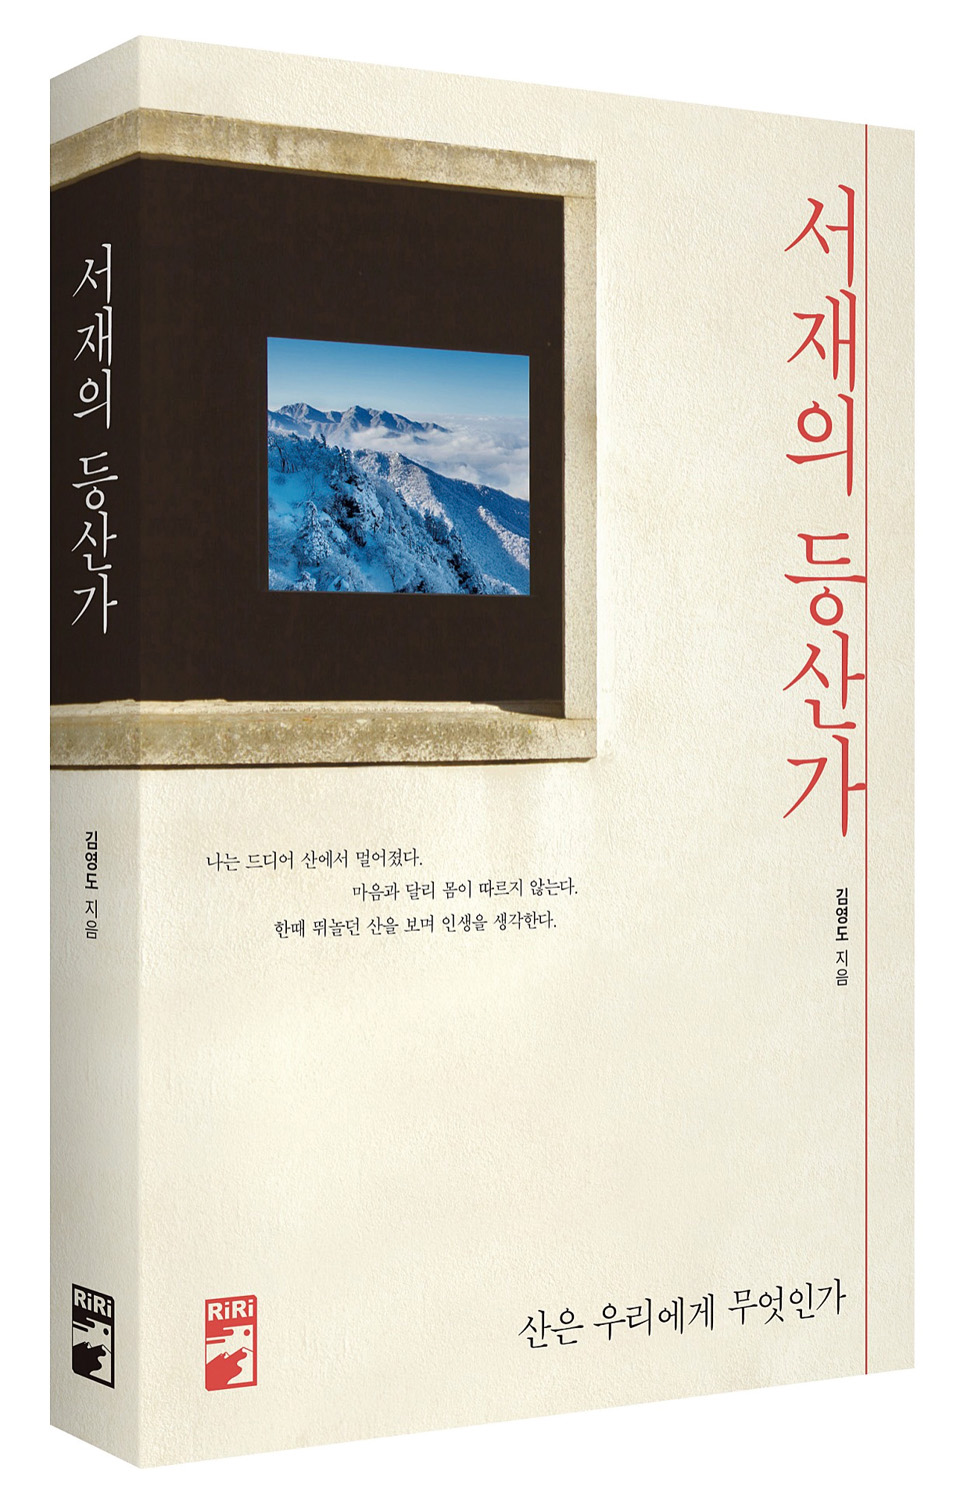 〈서재의 등산가〉 김영도 지음 리리퍼블리셔 2020년